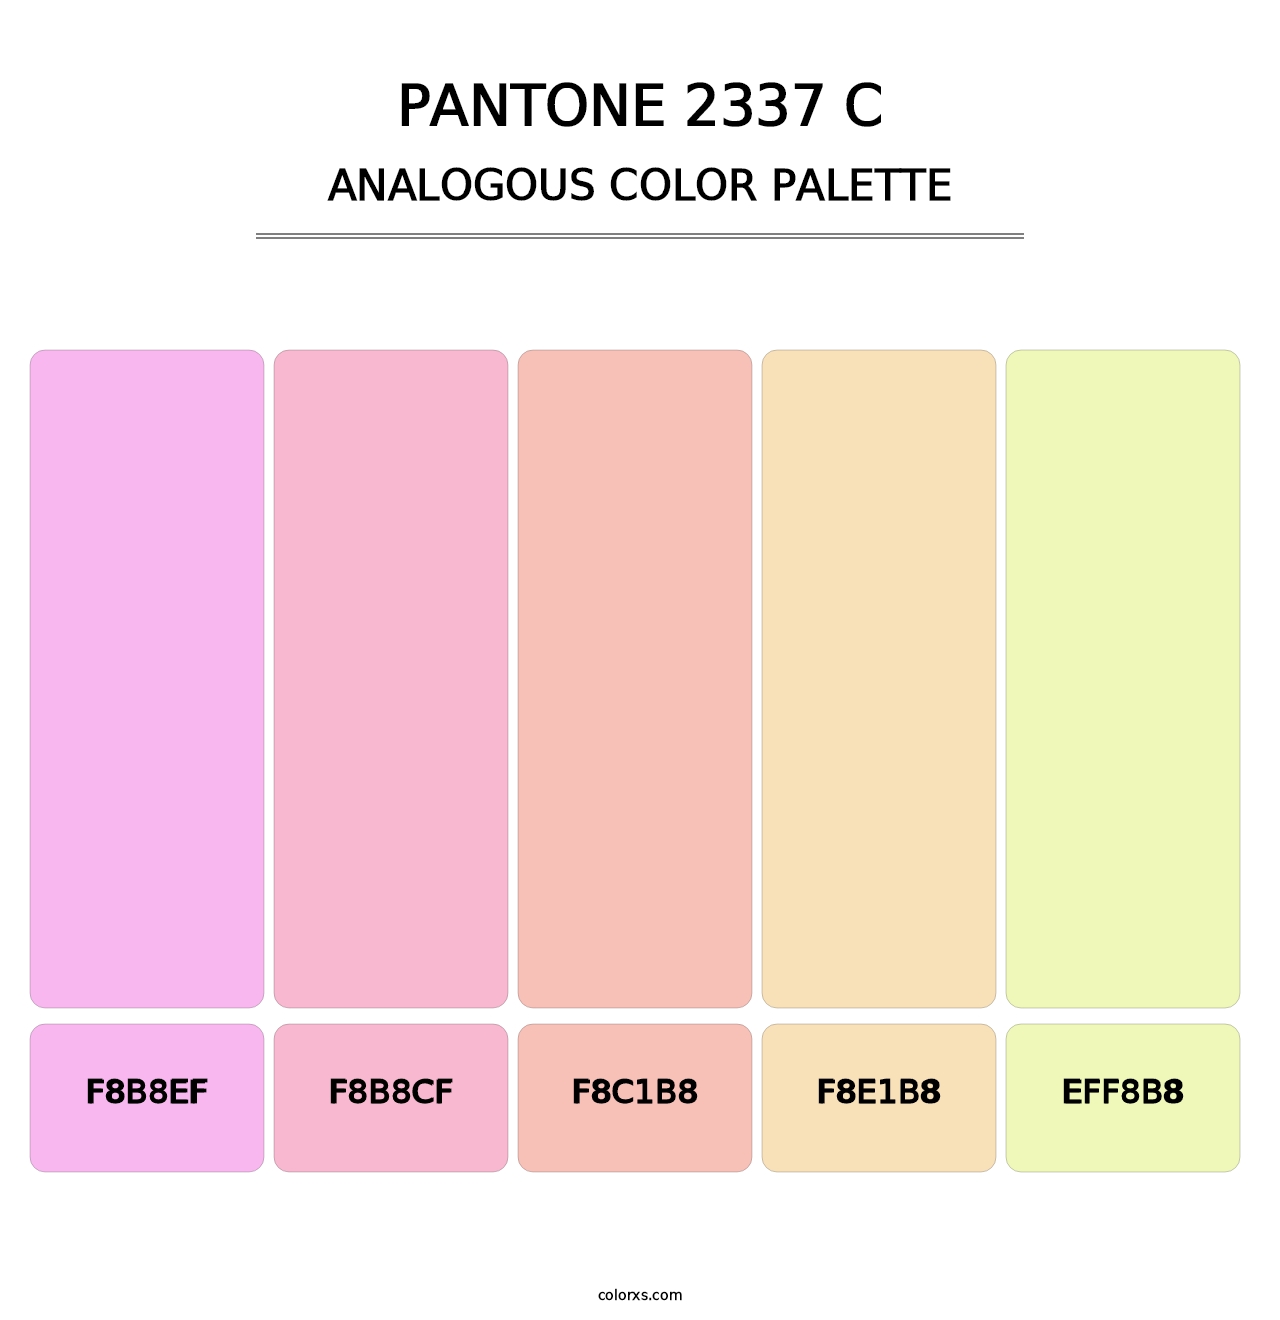 PANTONE 2337 C - Analogous Color Palette